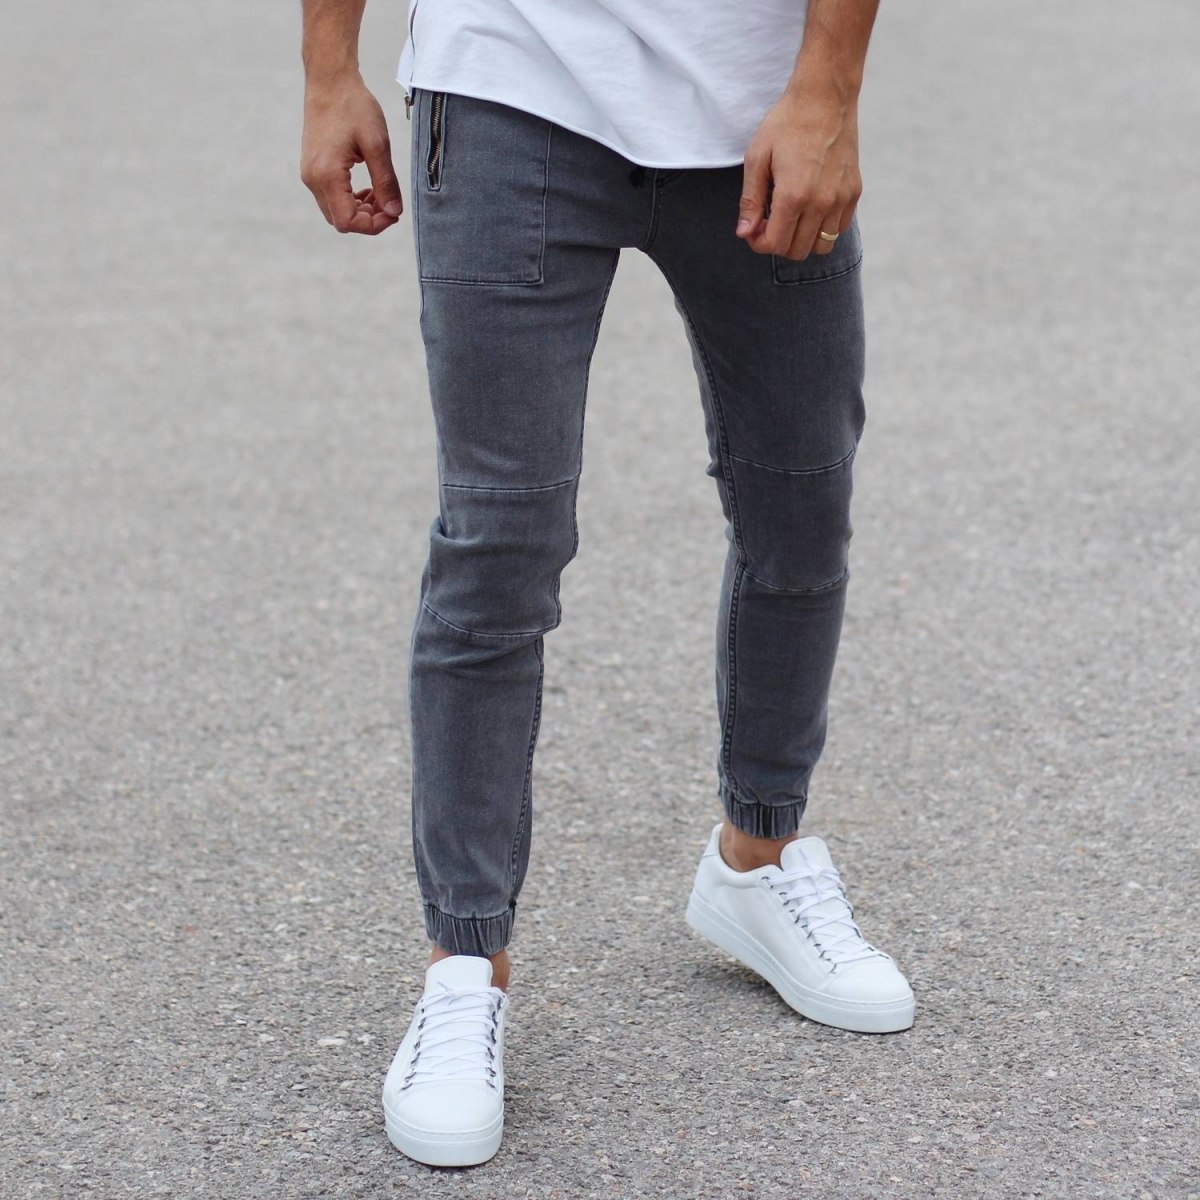 Herren Jeans mit Reißverschluss Taschen und elastischen Knöcheln in grau - 1